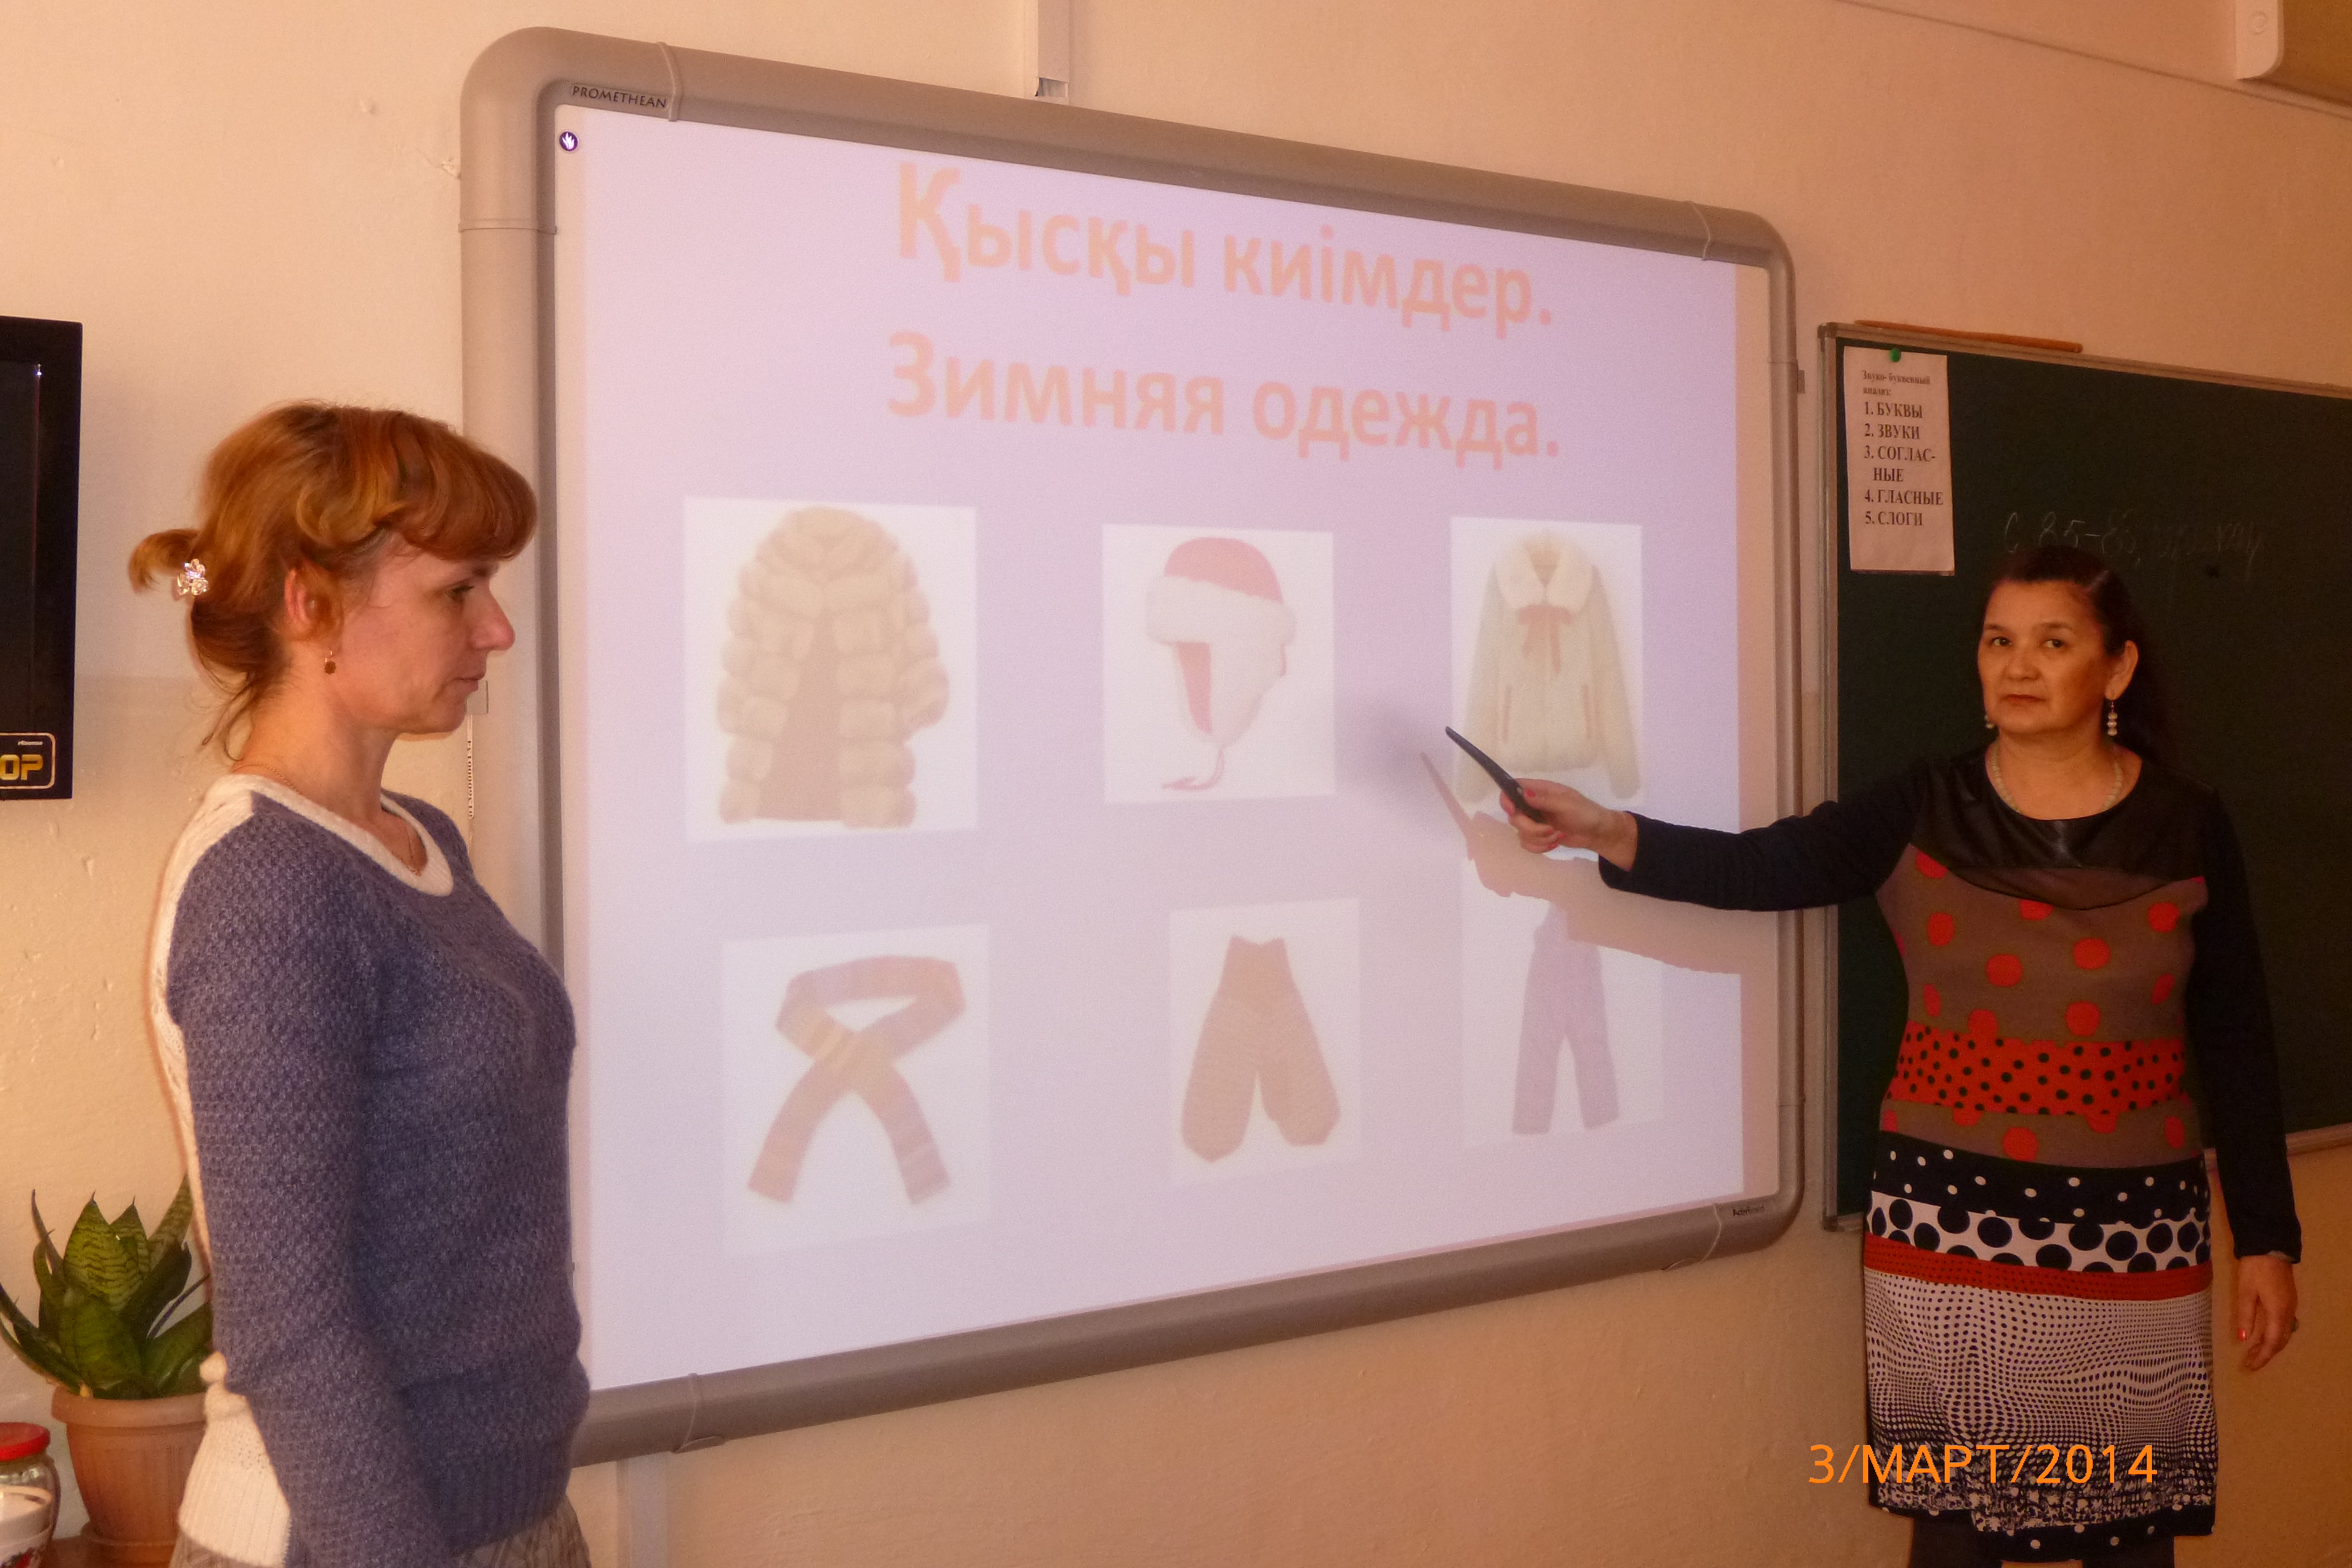 Бинарный урок по казахскому языку и миру вокруг